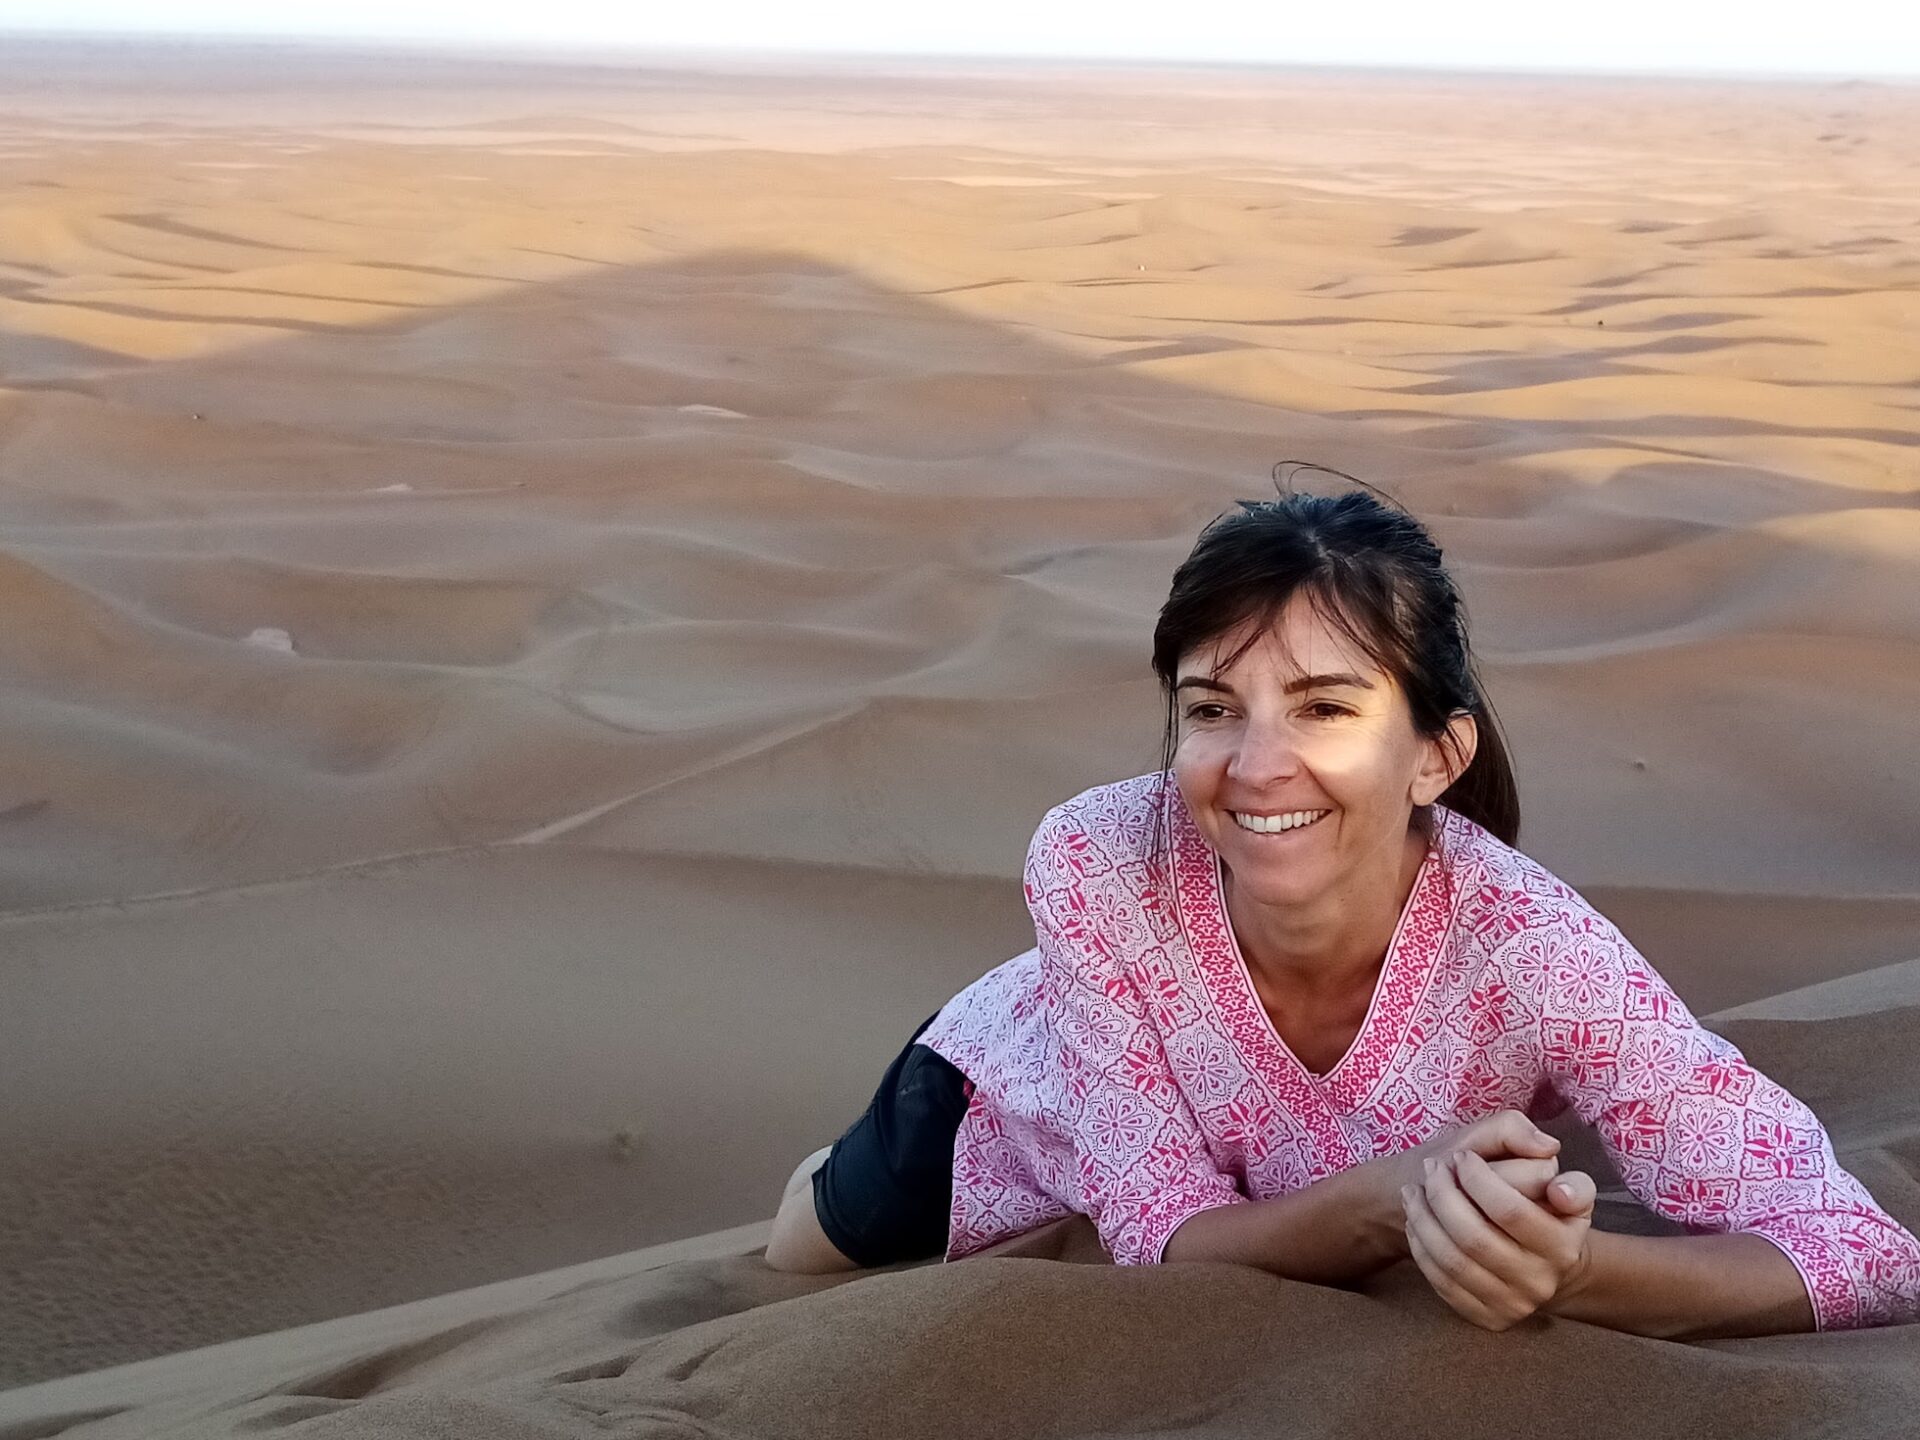 séjour deconnexion dans le désert marocain